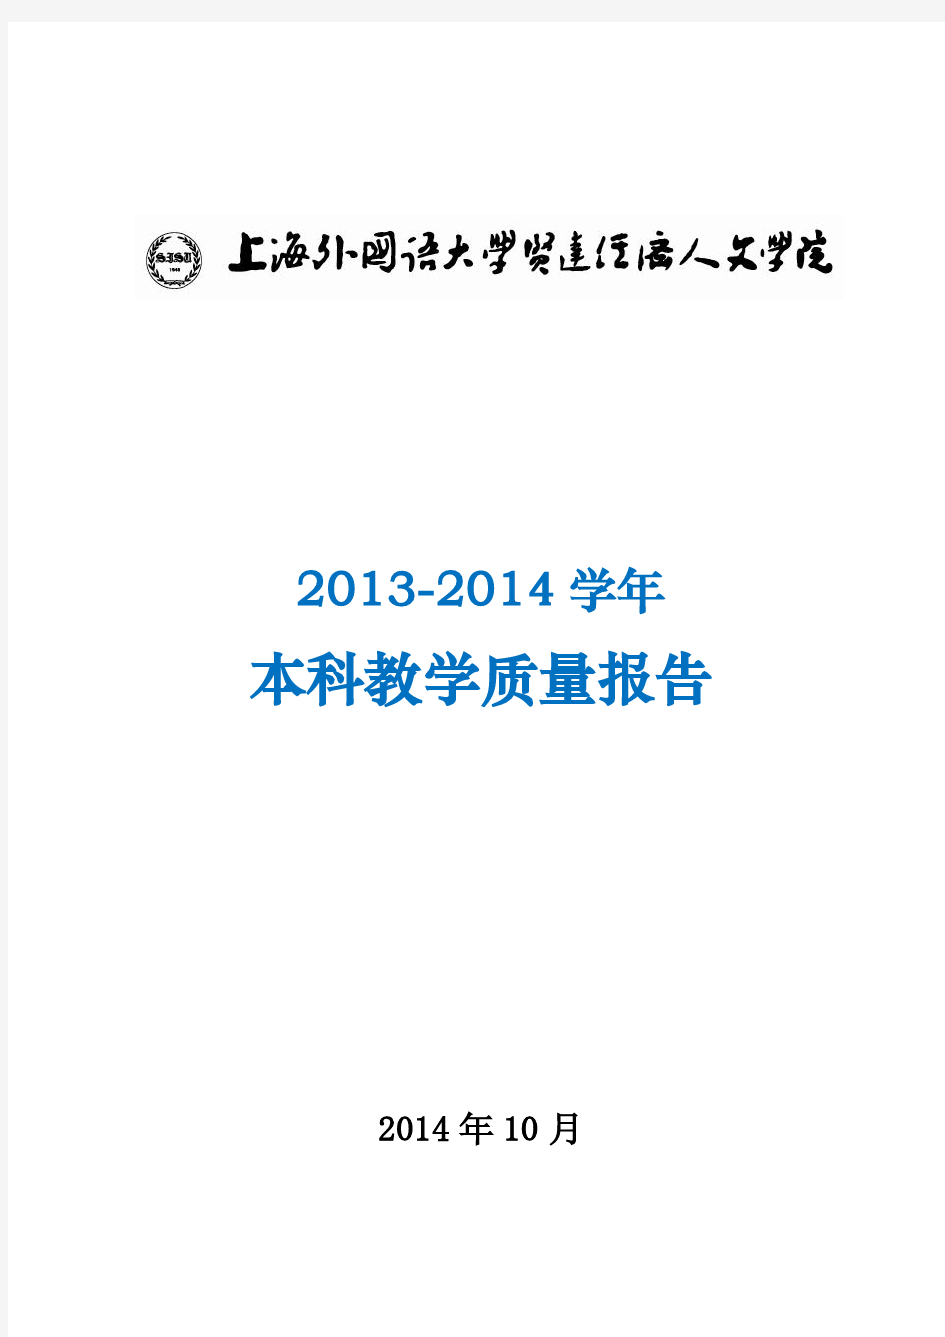 上海外国语大学贤达经济人文学院2013-2014学年本科教学质量报告